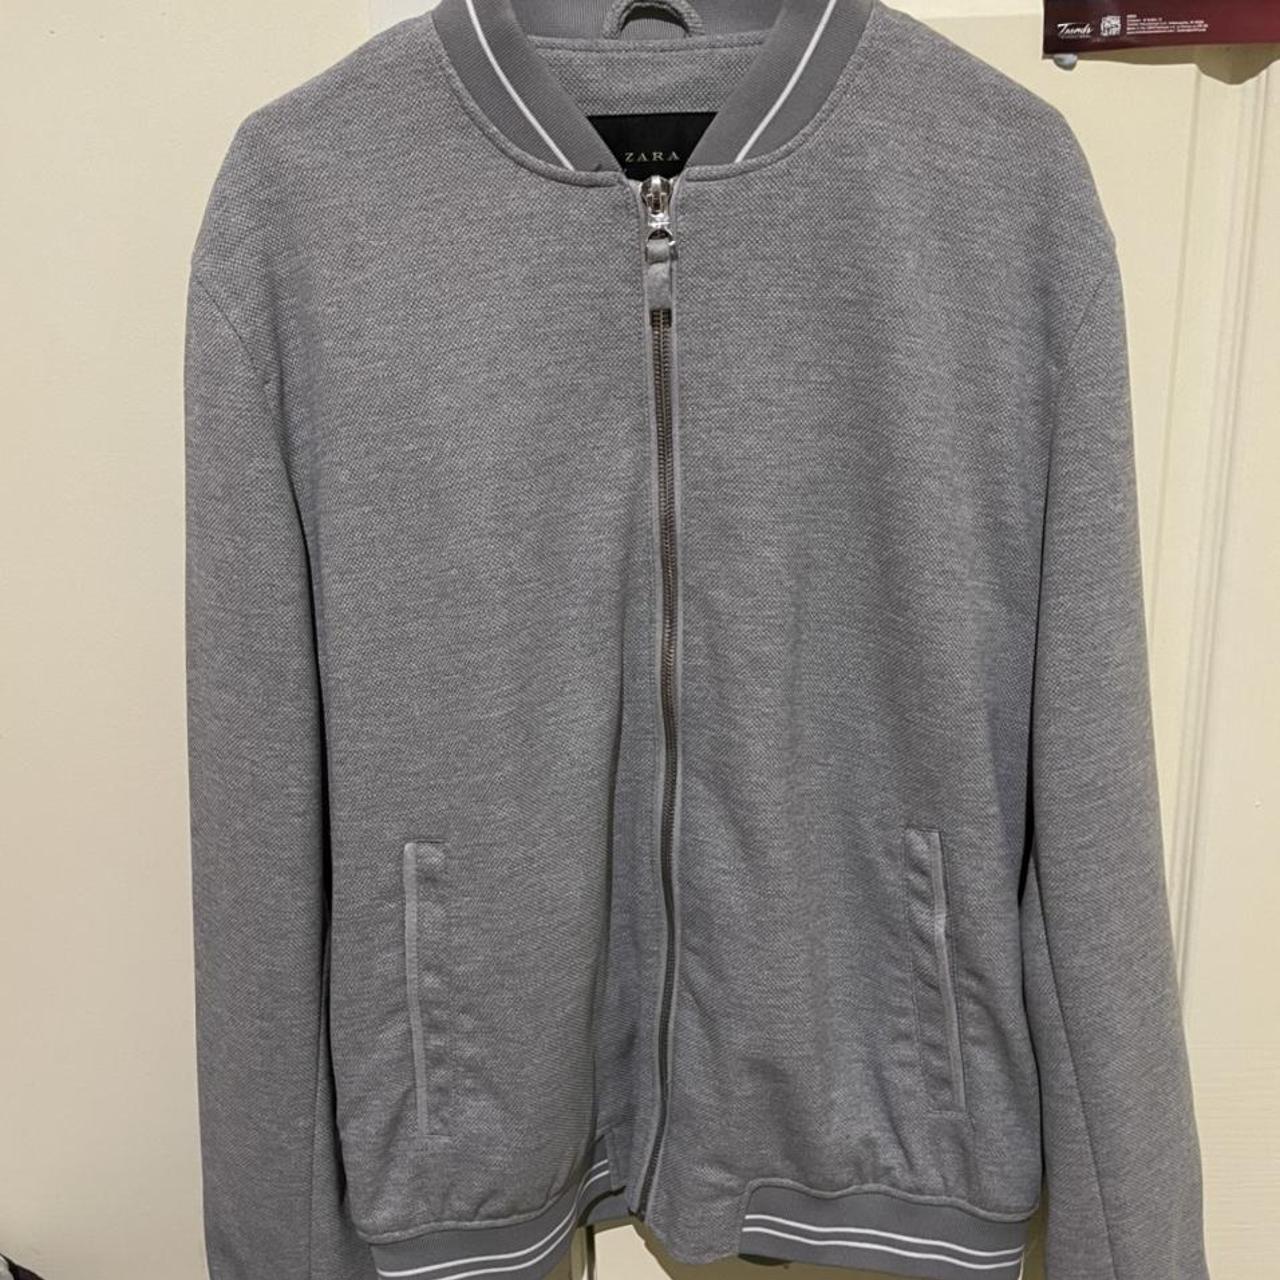 Style: Zara Bomber Jacket Size: Medium Colour: Grey - Depop